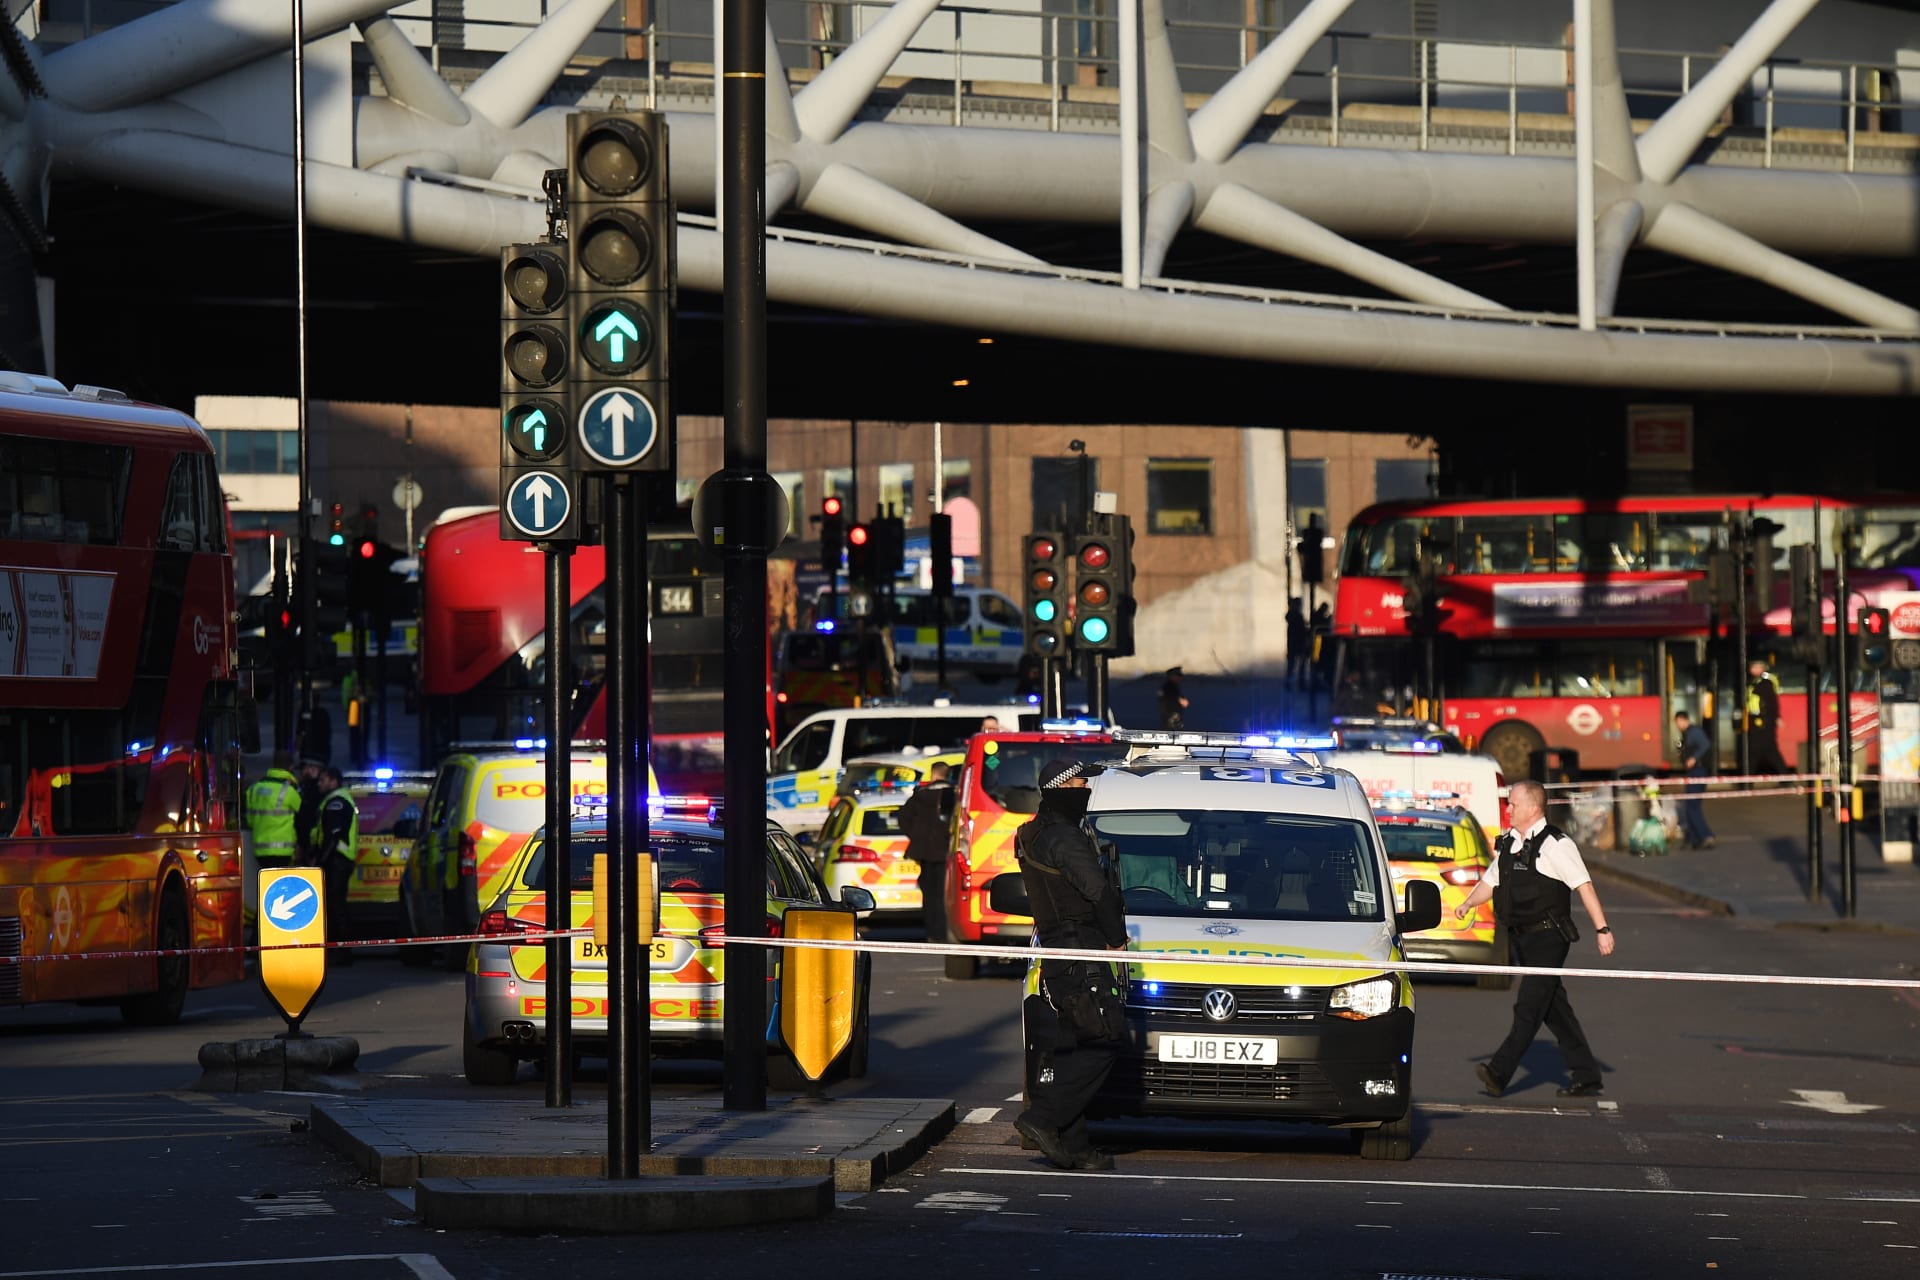 إطلاق نار قرب جسر لندن.. والشرطة: الحادث في مراحله الأولى